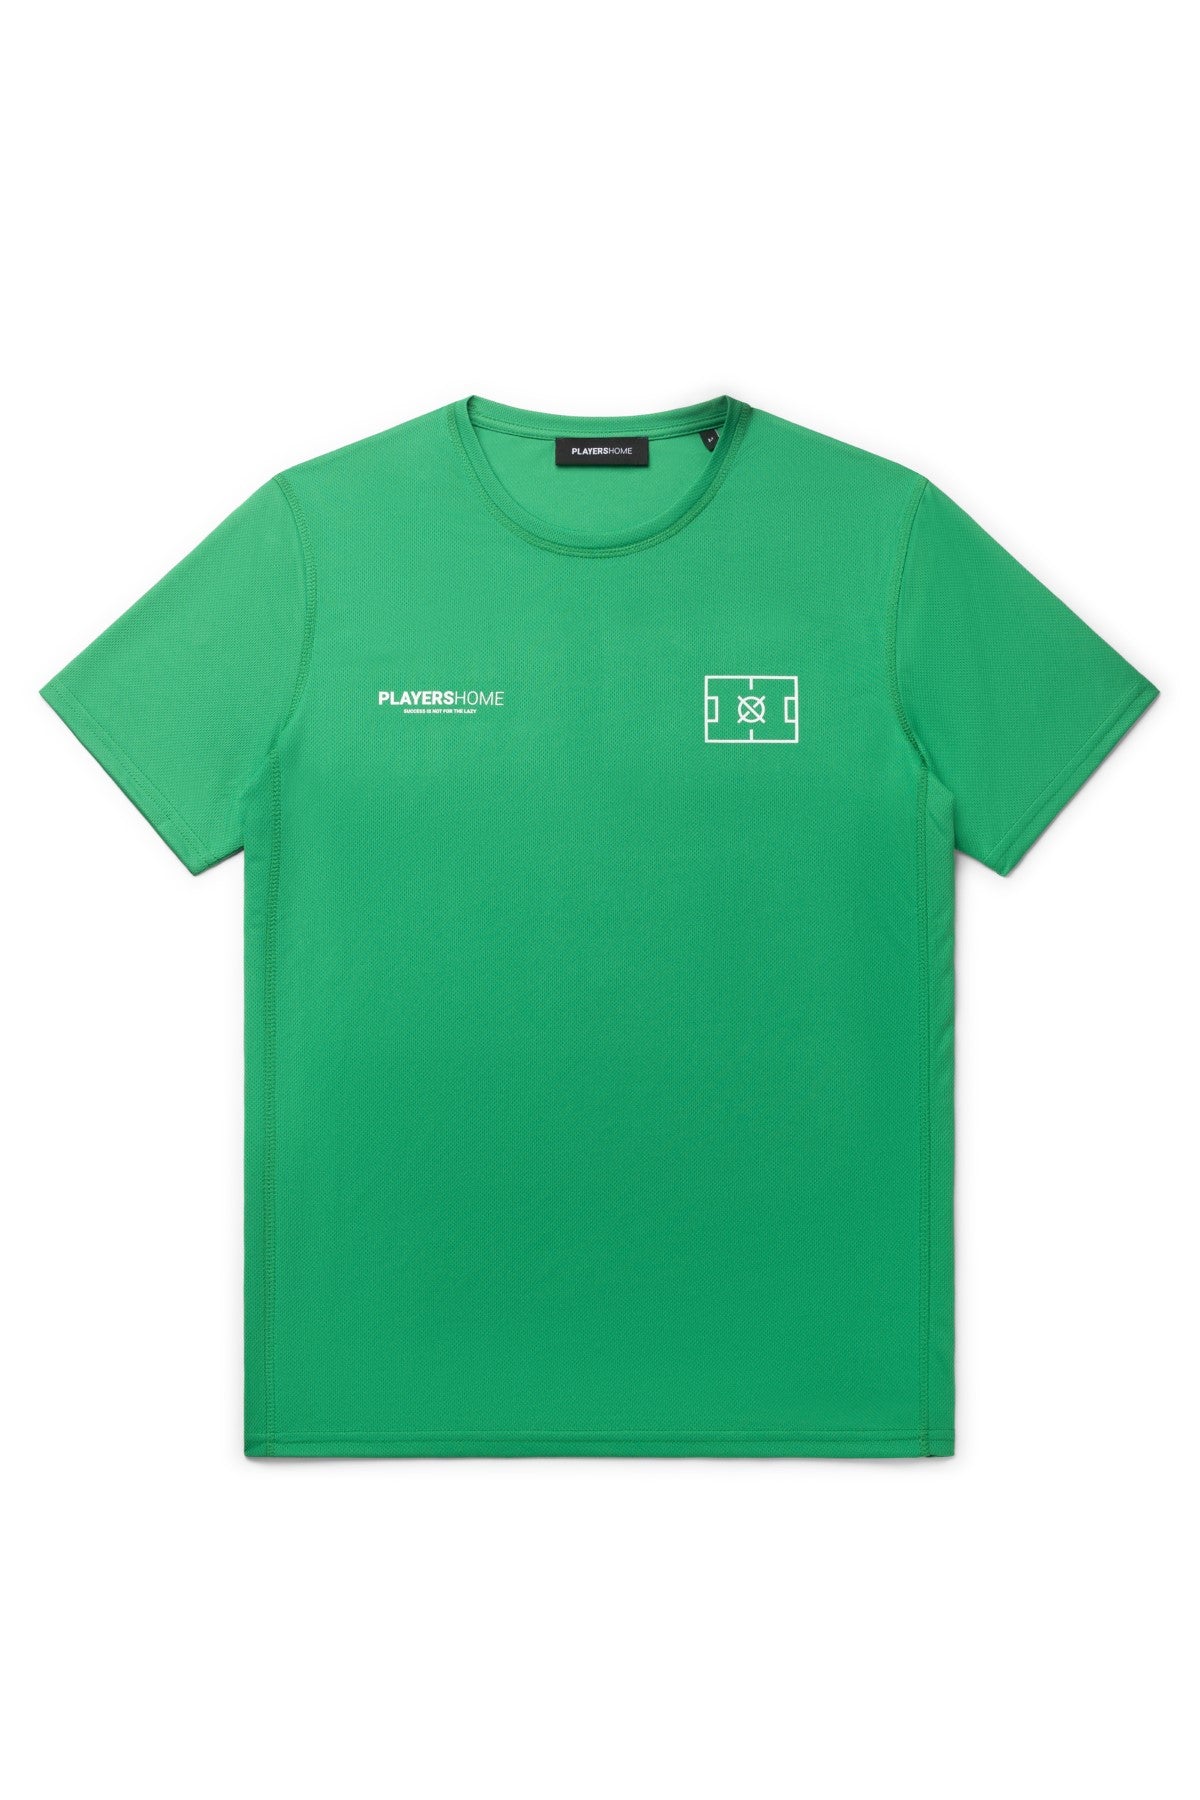 PLAYERHOME x TRUST T-Shirt - Green